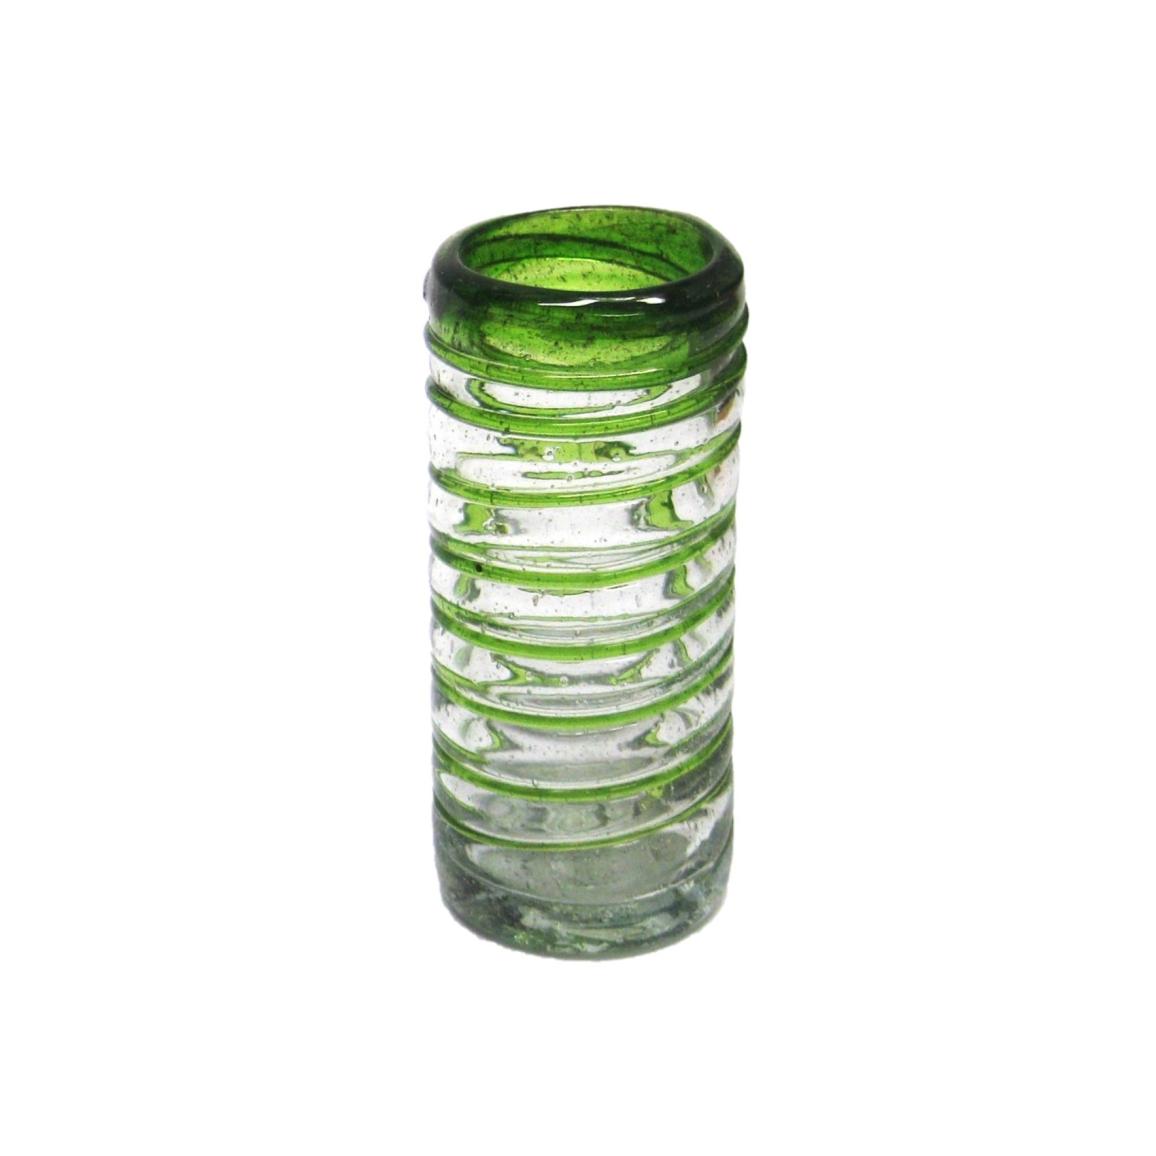 VIDRIO SOPLADO / Juego de 6 'caballitos' con espiral verde esmeralda / Lazos verde esmeralda giran para cubrir stos preciosos 'caballitos', perfectos para fiestas o disfrutar de su licor favorito.